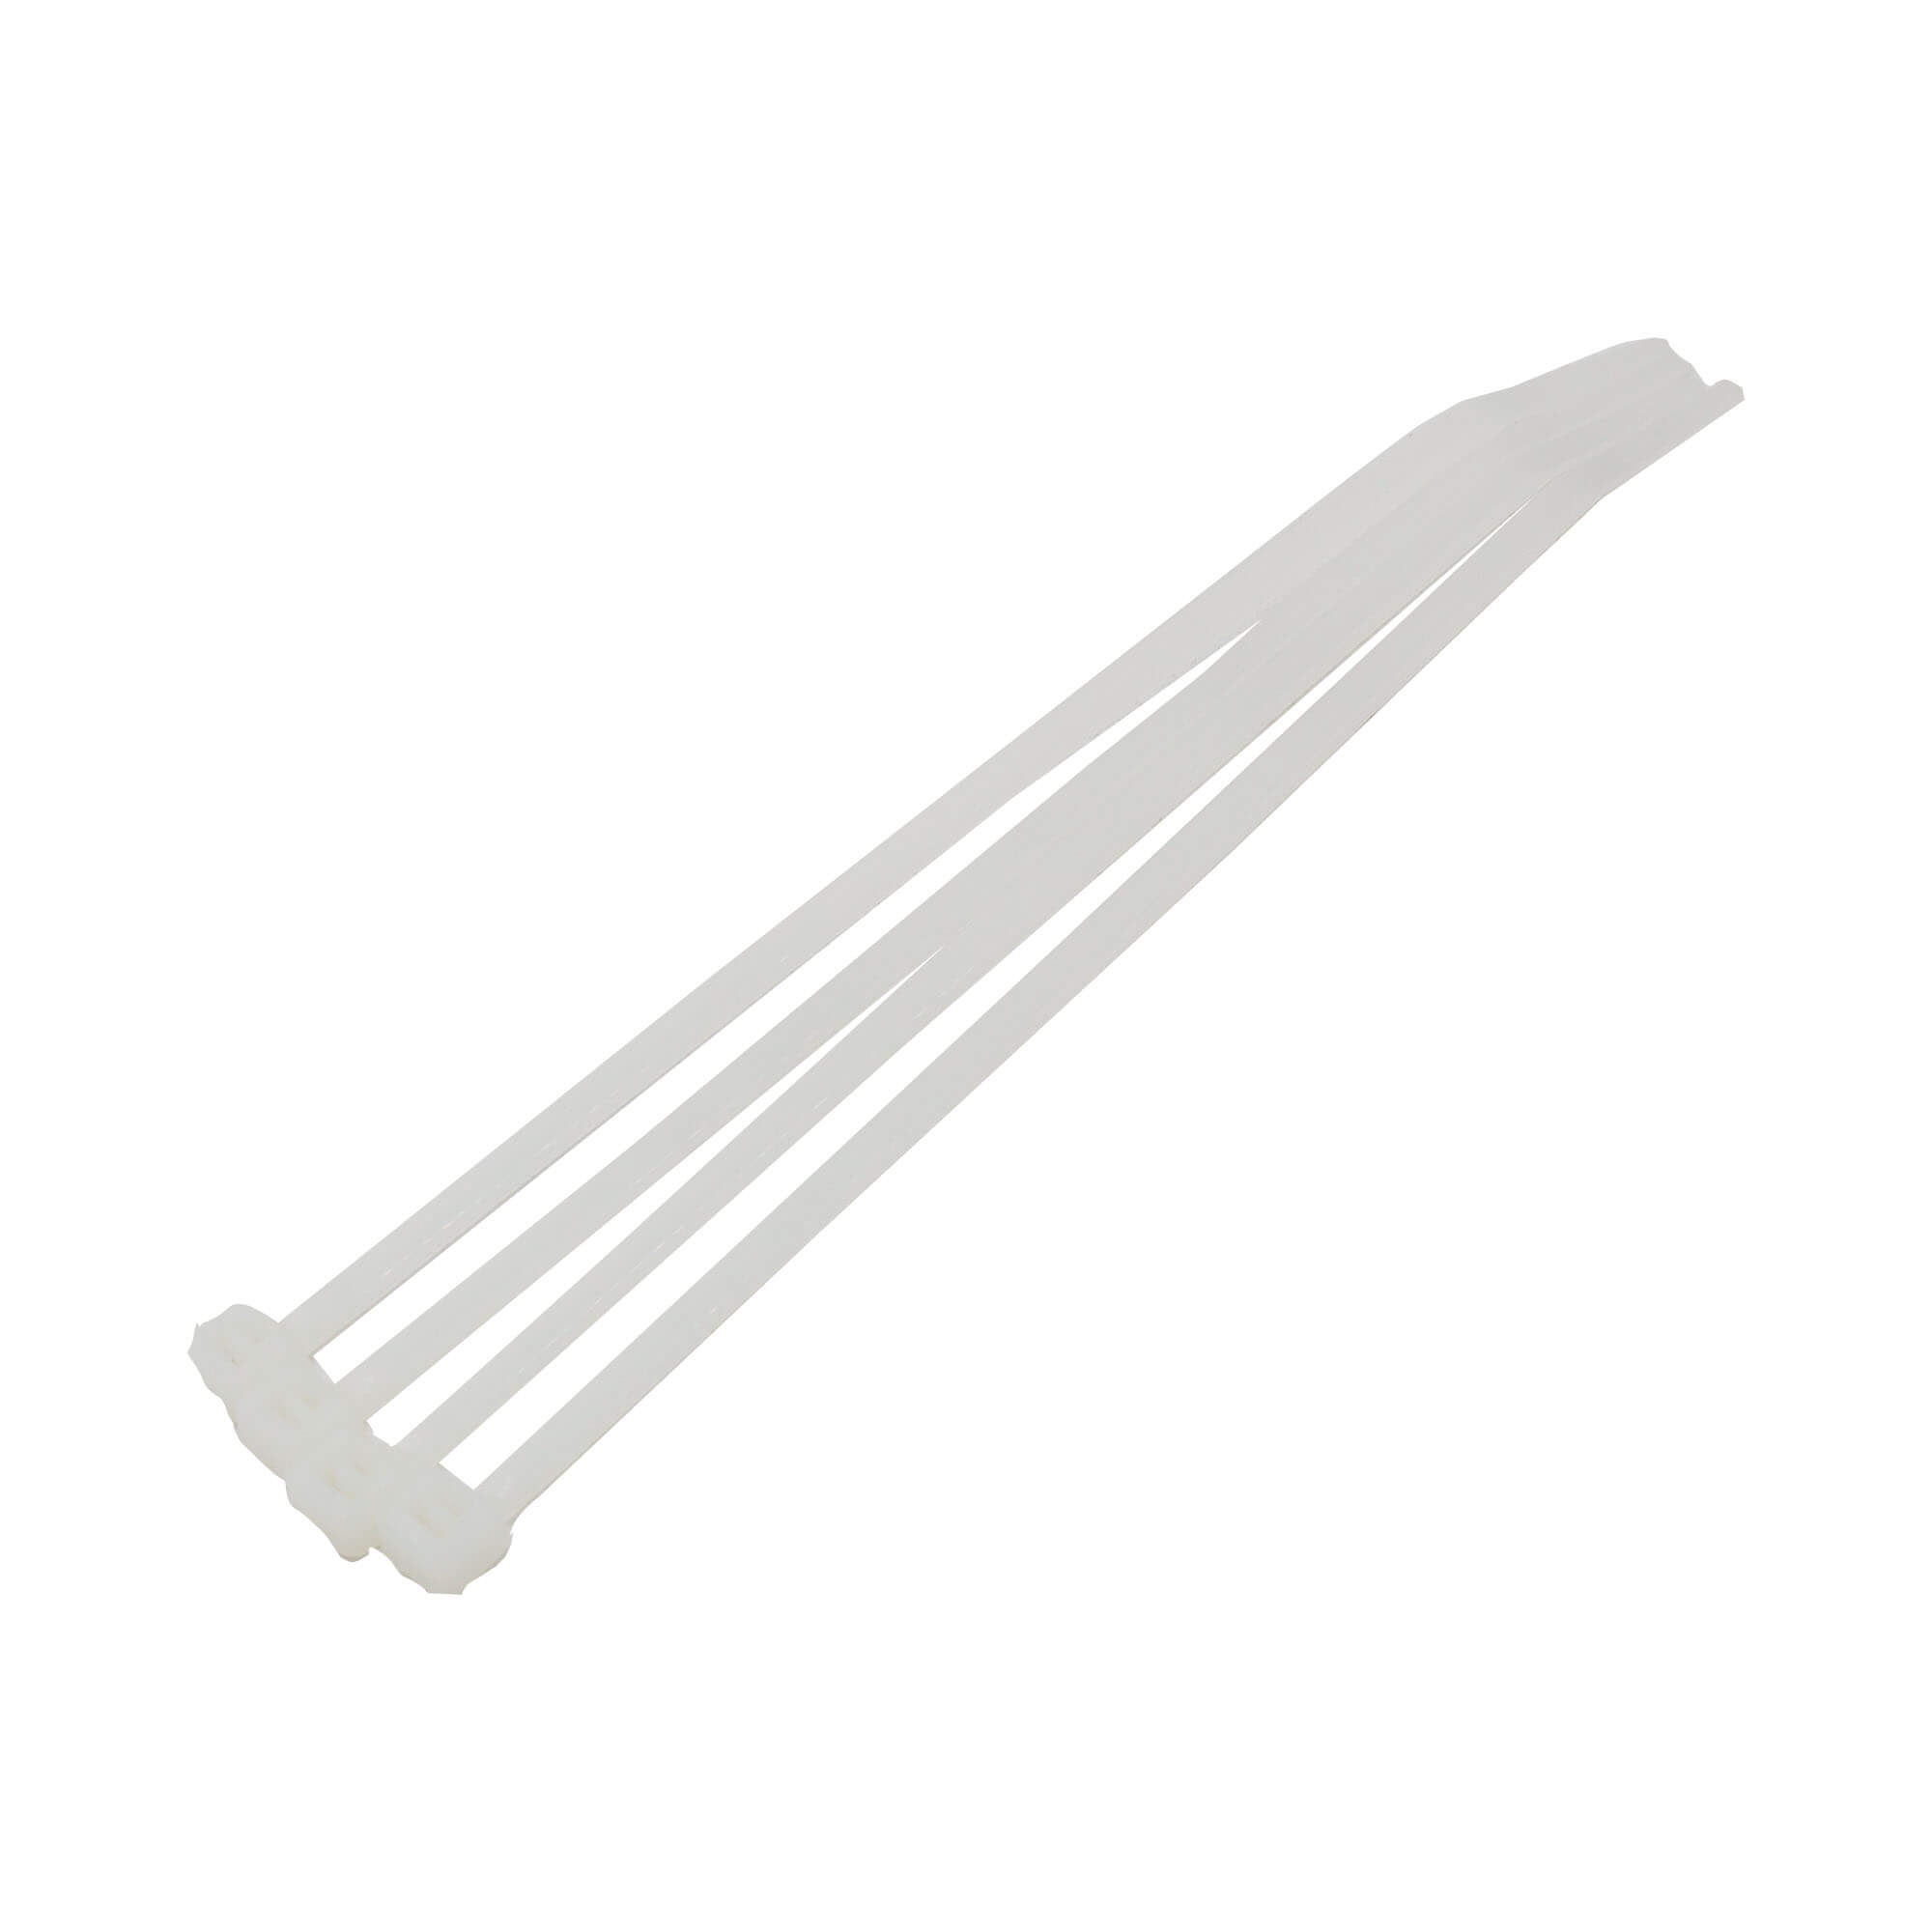 Coliere plastic albe 3,6X200mm